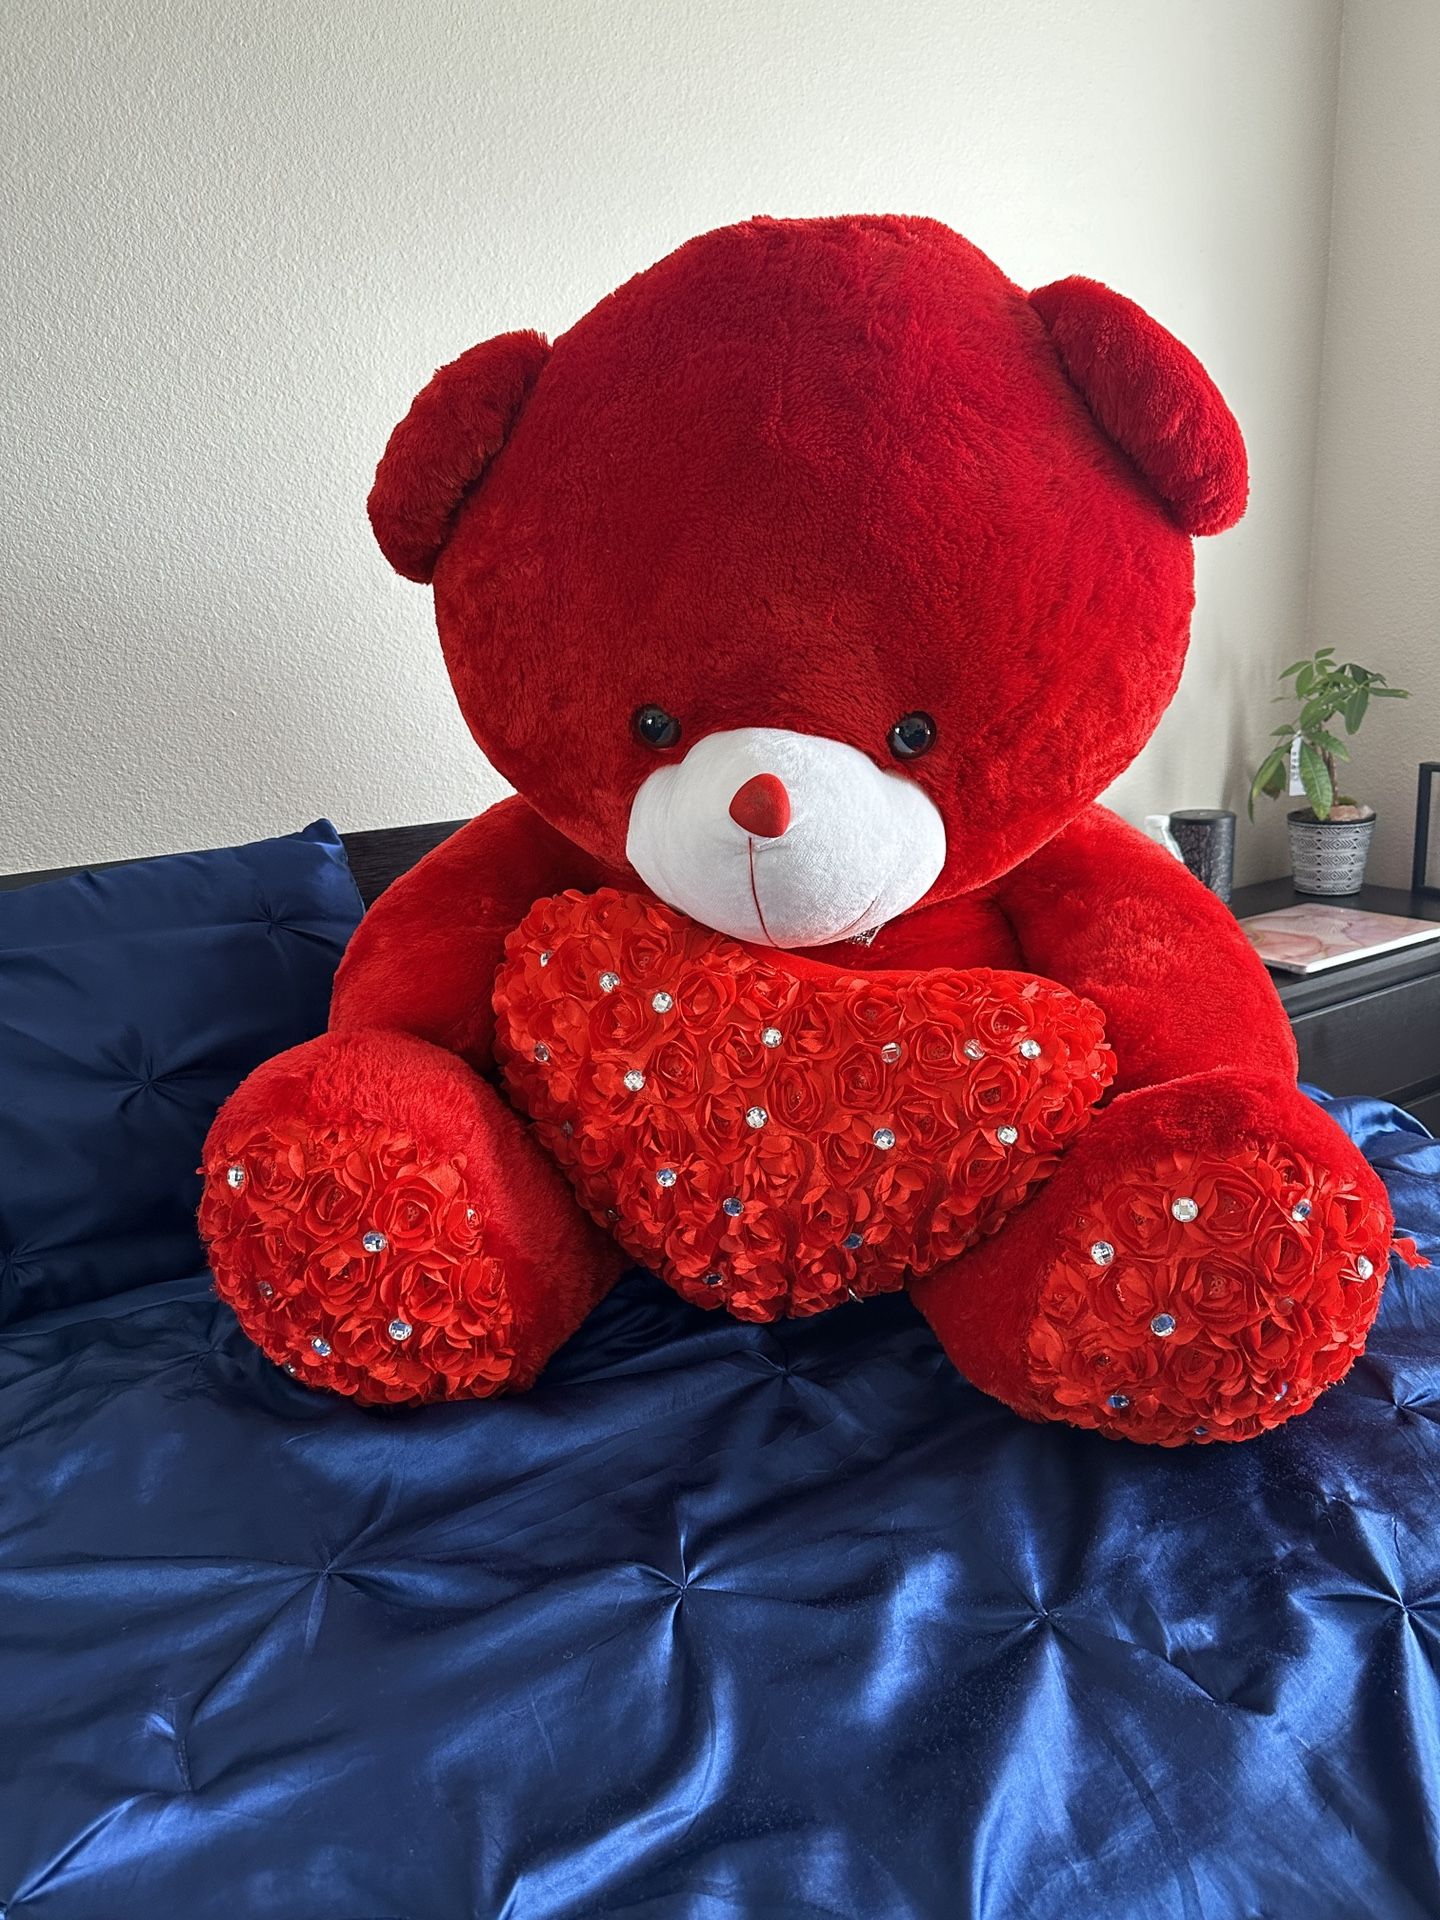 Giant Teddy Bears - Huggable Joy for Sale! 🐻